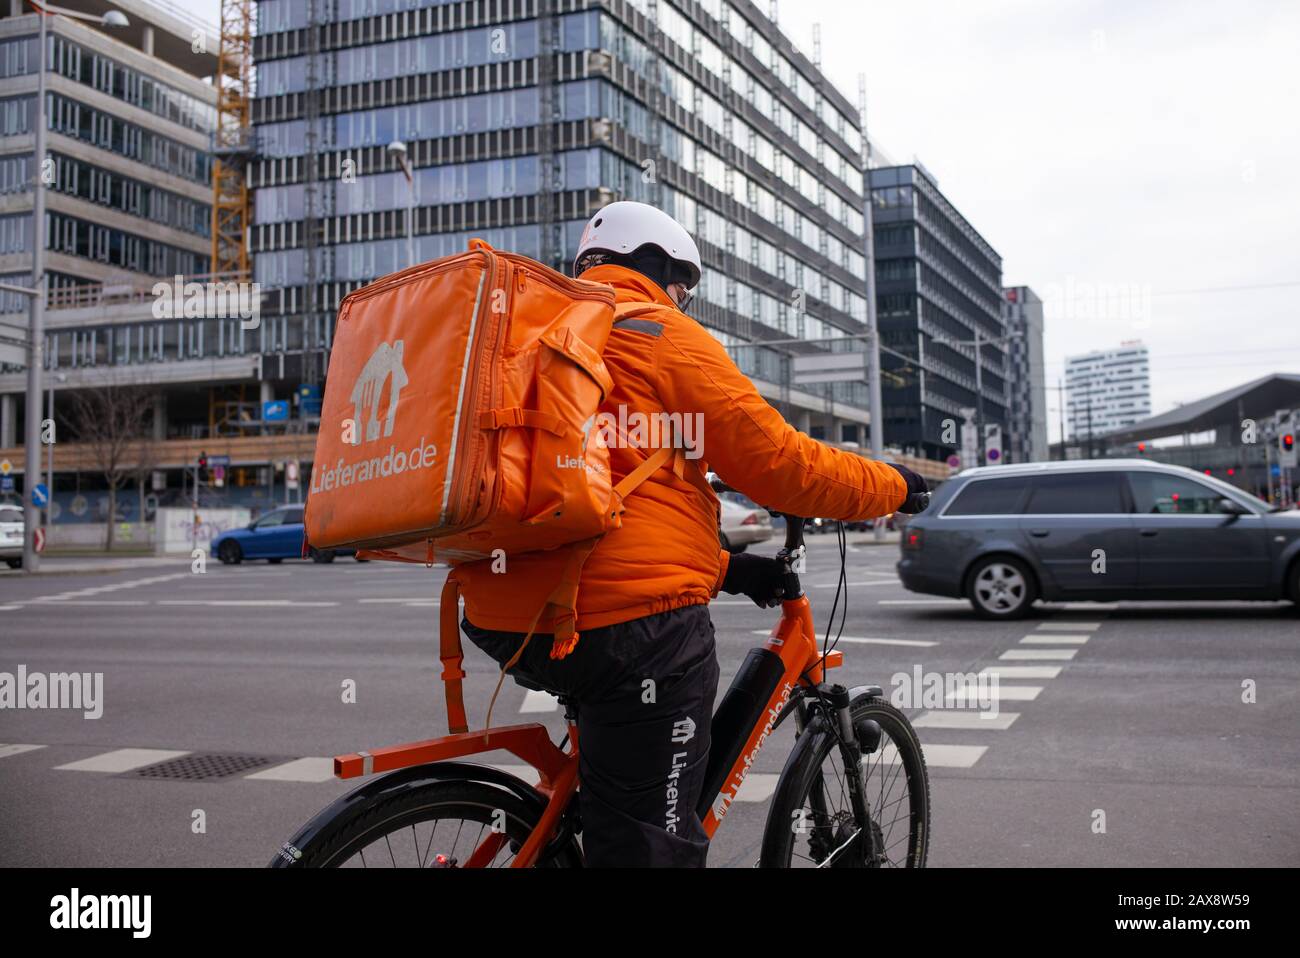 Ein Lieferando-Kurier, der in einer leuchtend fluoreszierenden orangefarbenen Uniform gekleidet ist, fährt mit dem Fahrrad, um Lebensmittel an einen Kunden zu transportieren Stockfoto